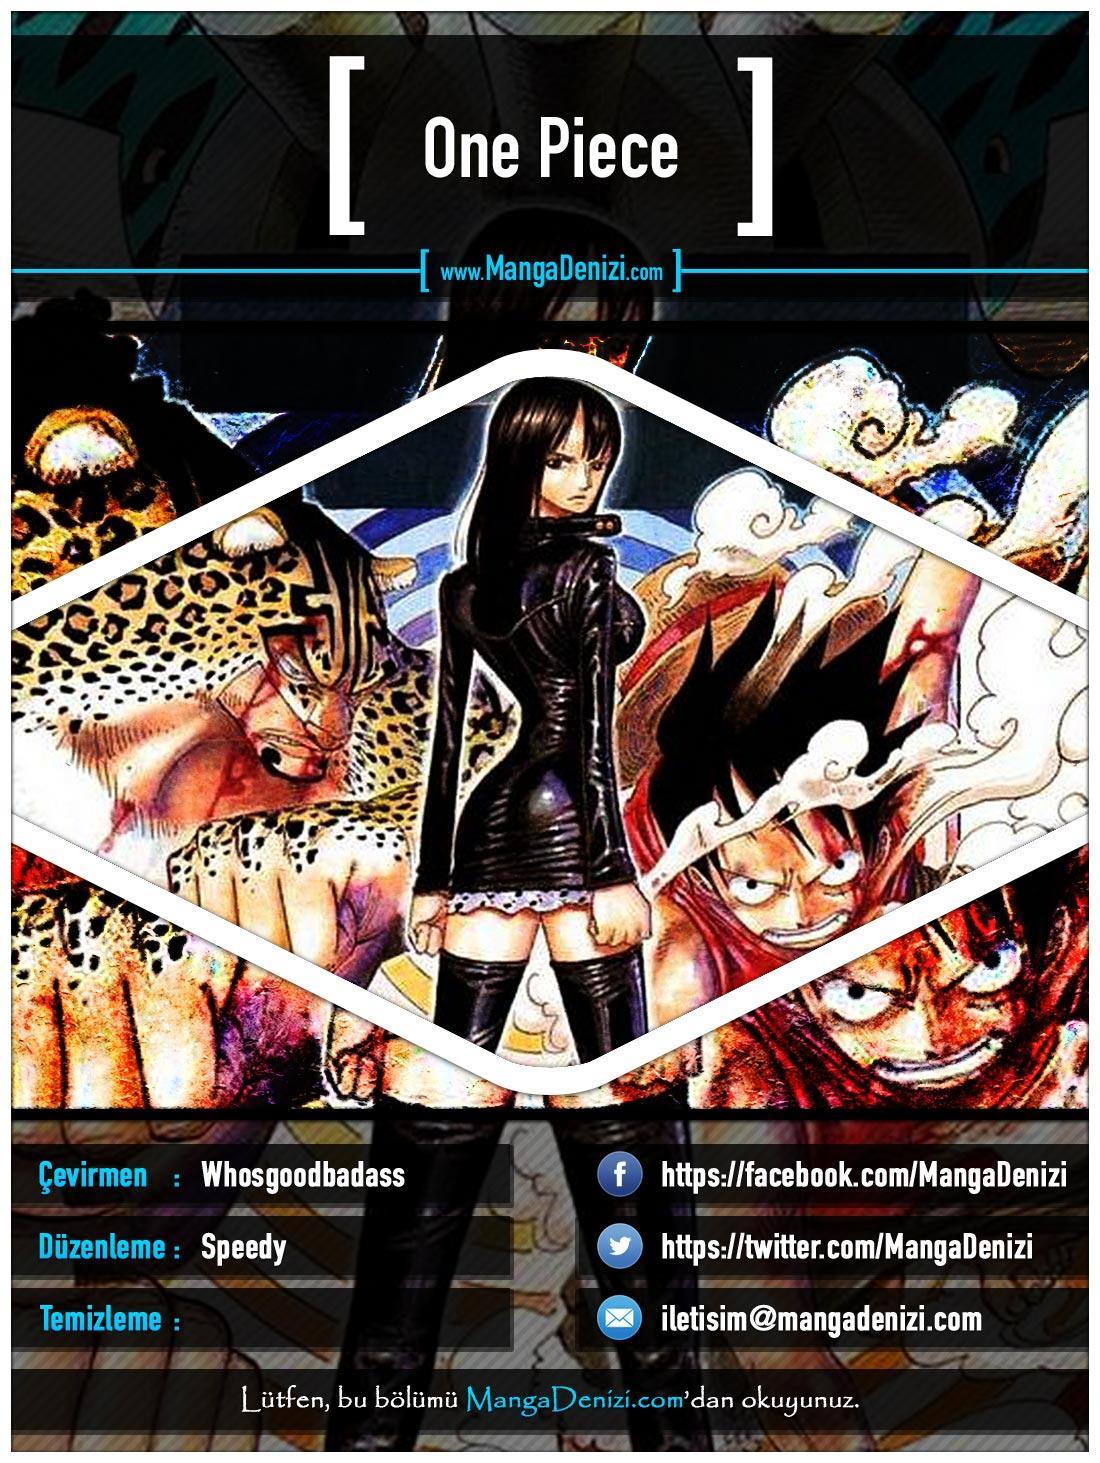 One Piece [Renkli] mangasının 0433 bölümünün 1. sayfasını okuyorsunuz.